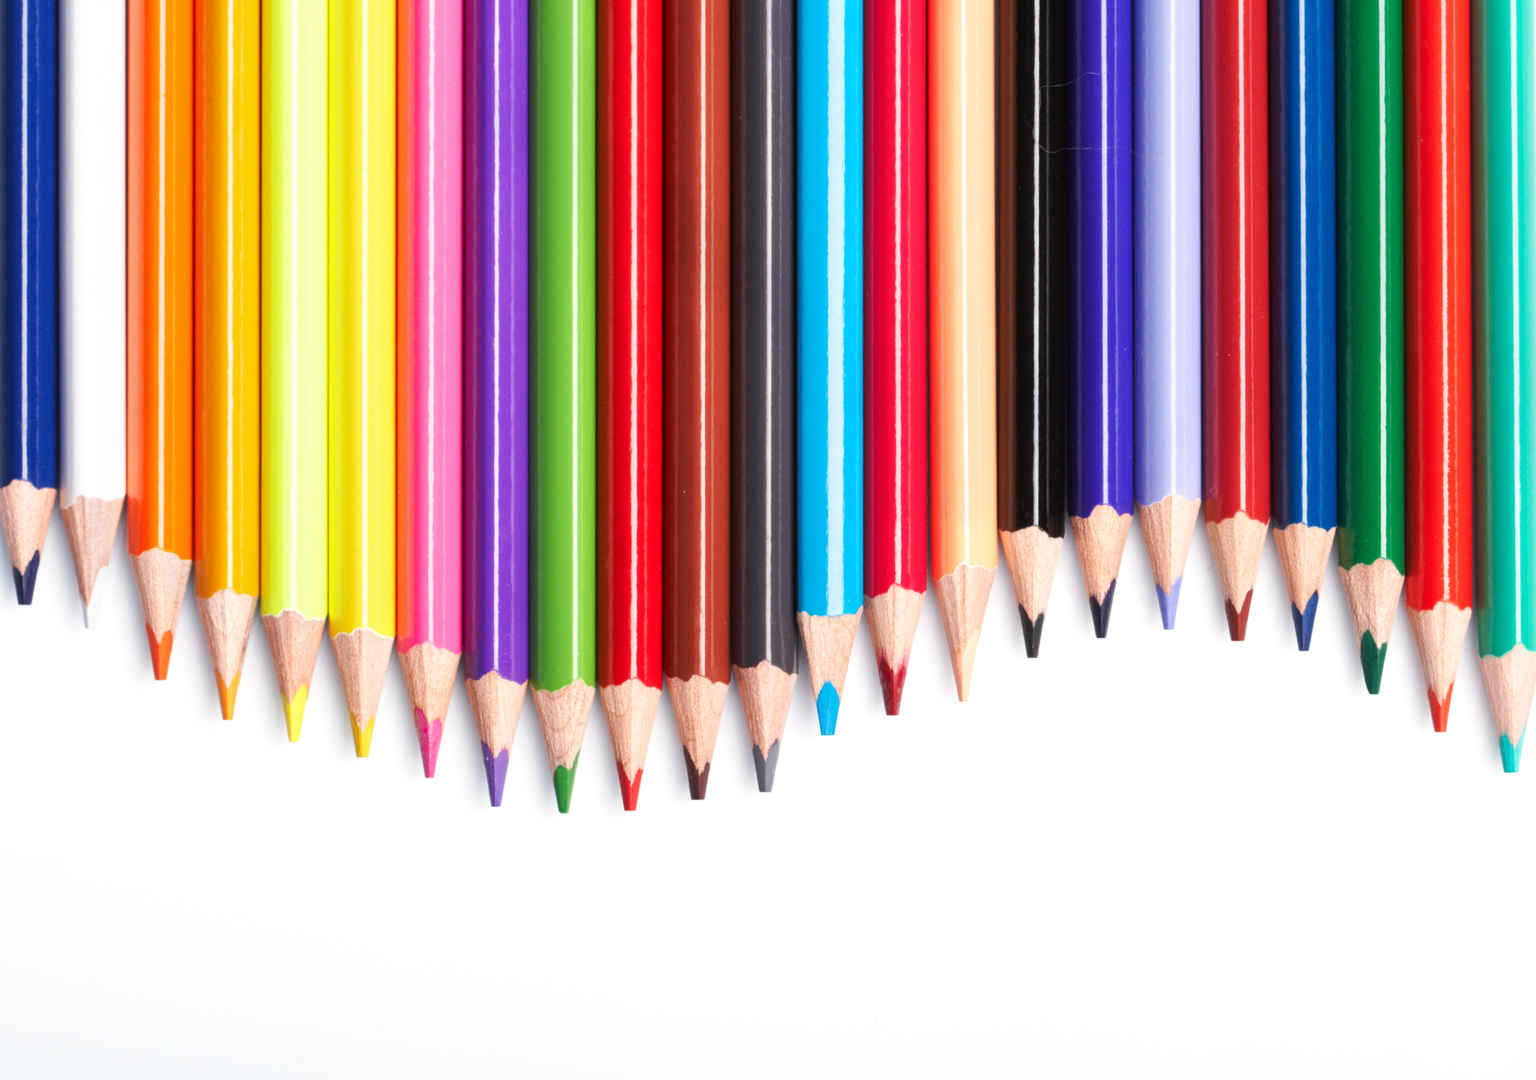 整齐排列的笔尖弯曲的彩色铅笔